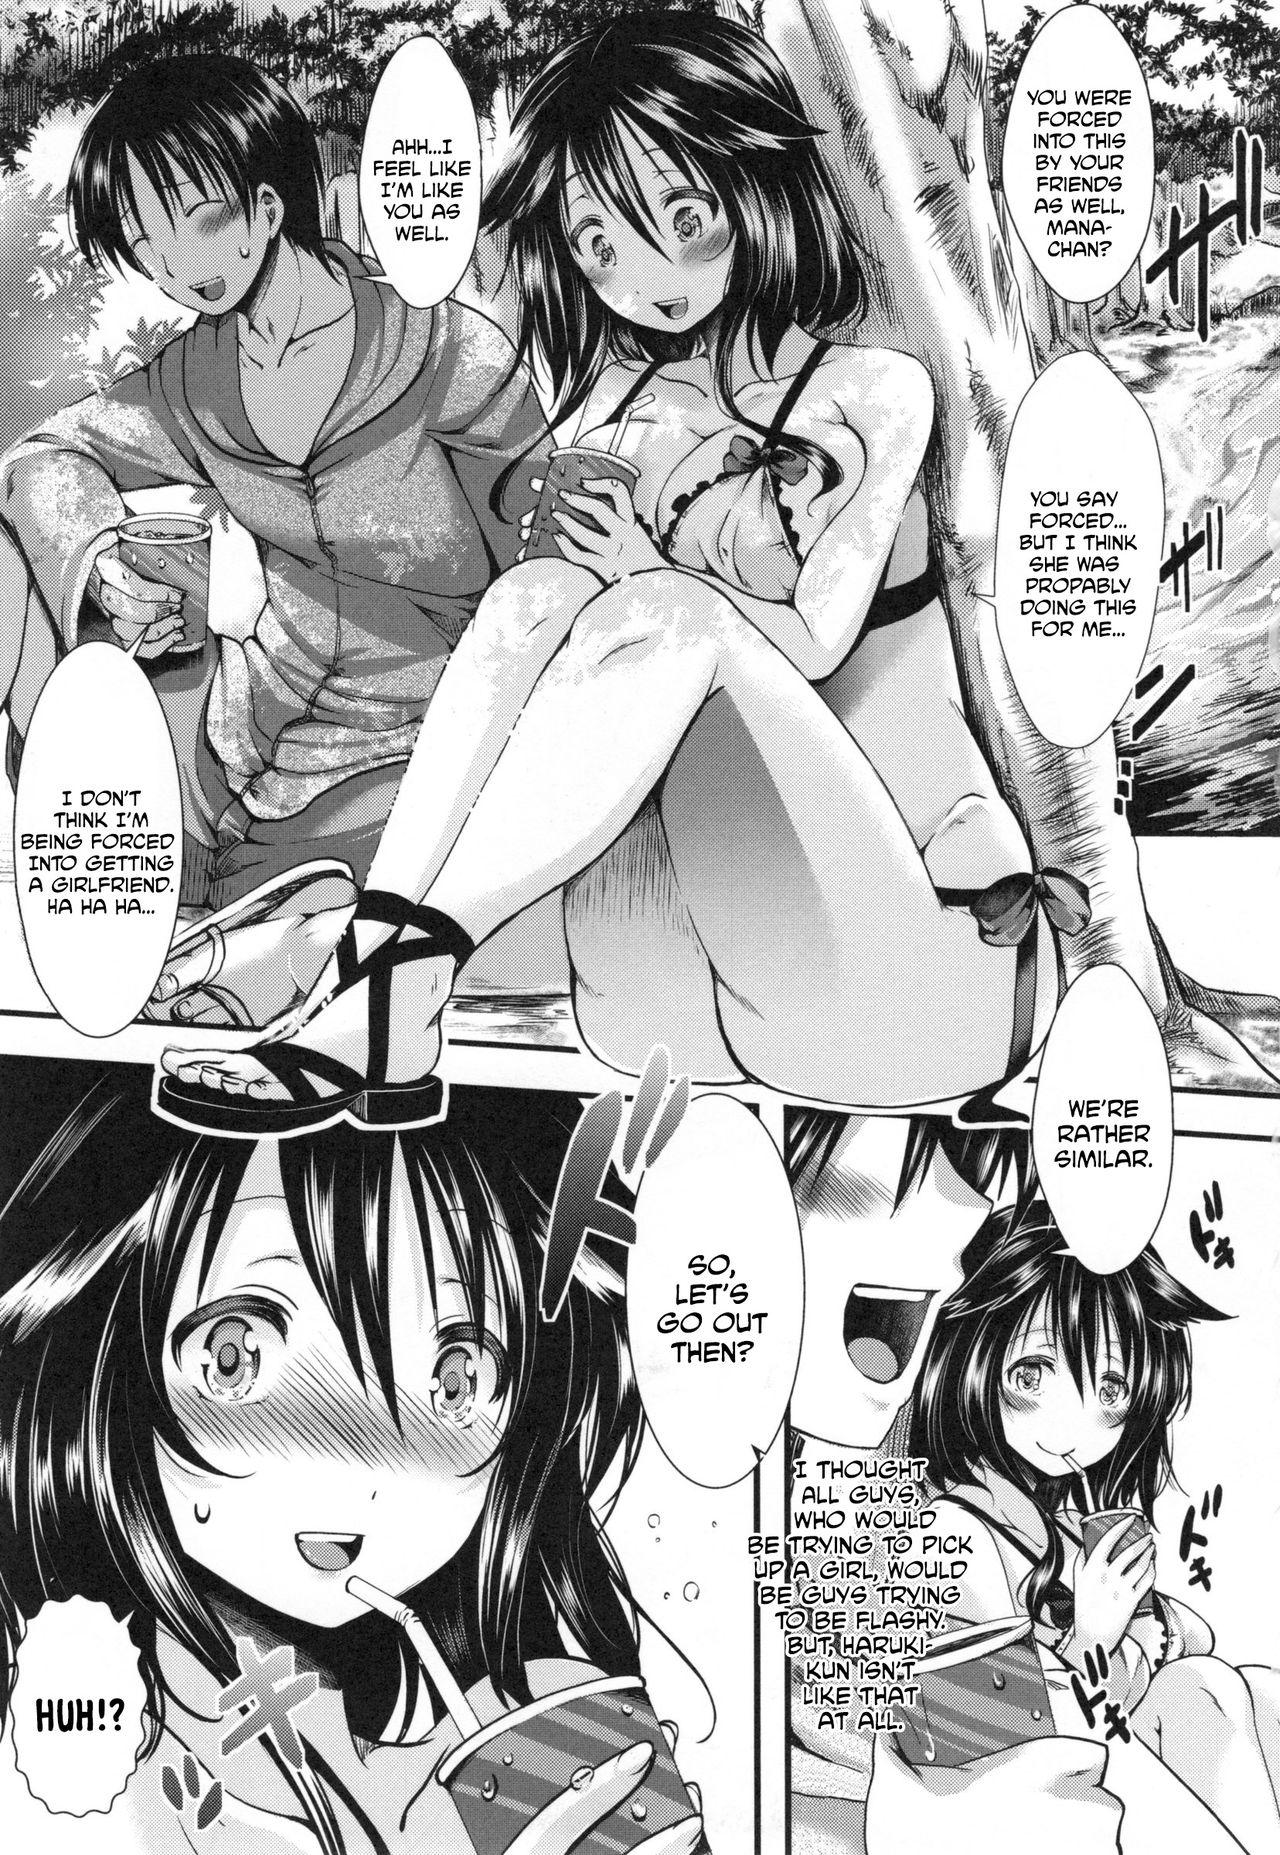  Kono Natsu, Shoujo wa Bitch ni Naru. - Bitch in Summer Condom - Page 3